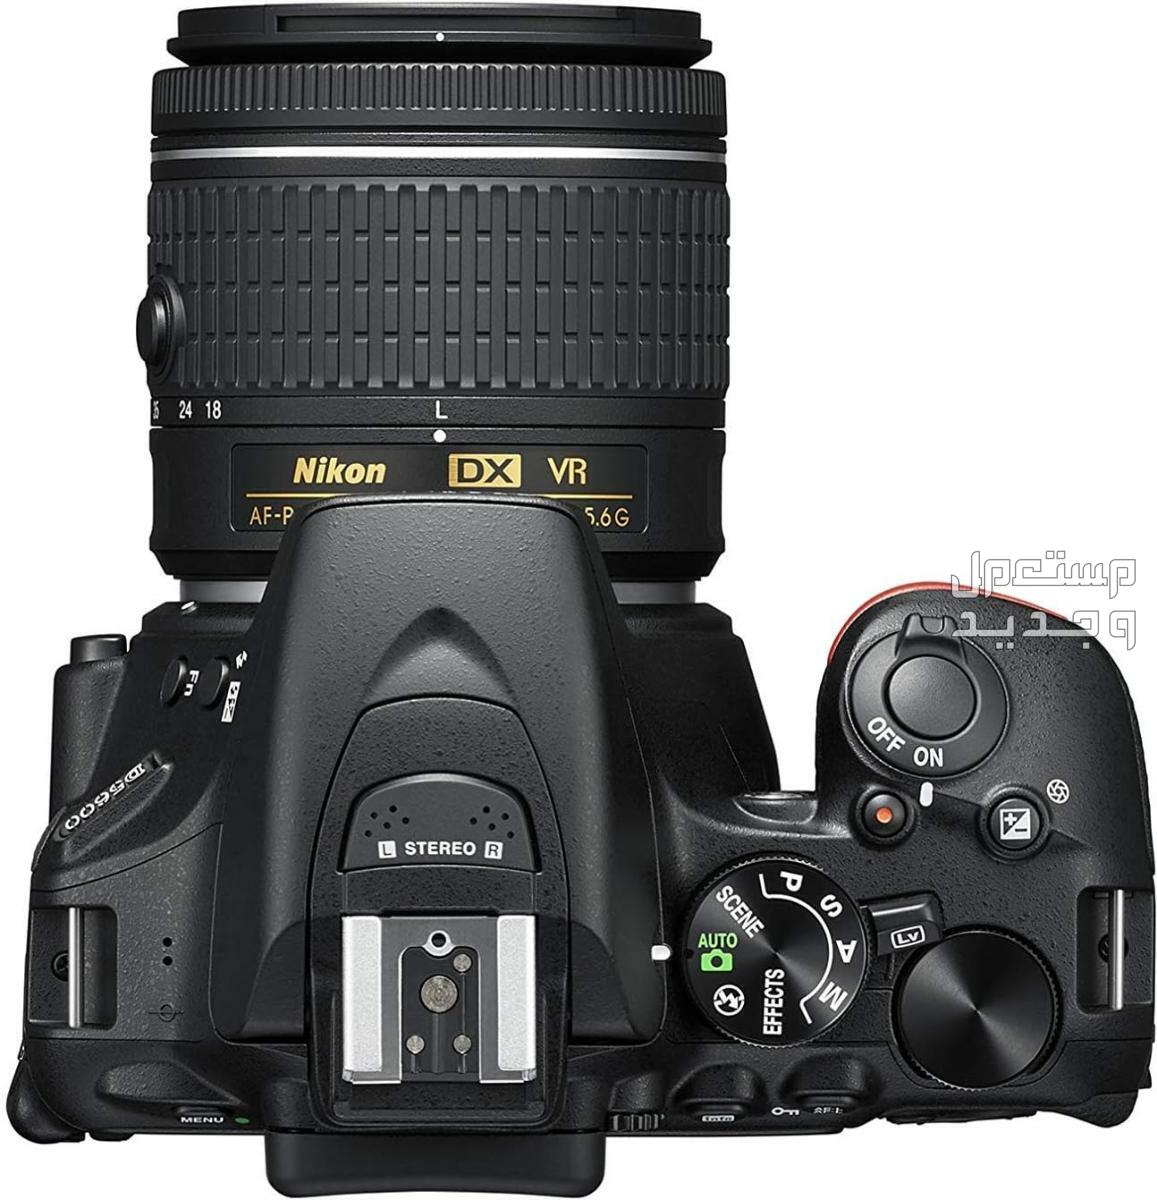 10 كاميرات تصوير ماركات عالمية بأسعار رخيصة في اليَمَن مميزات كاميرا Nikon D5600